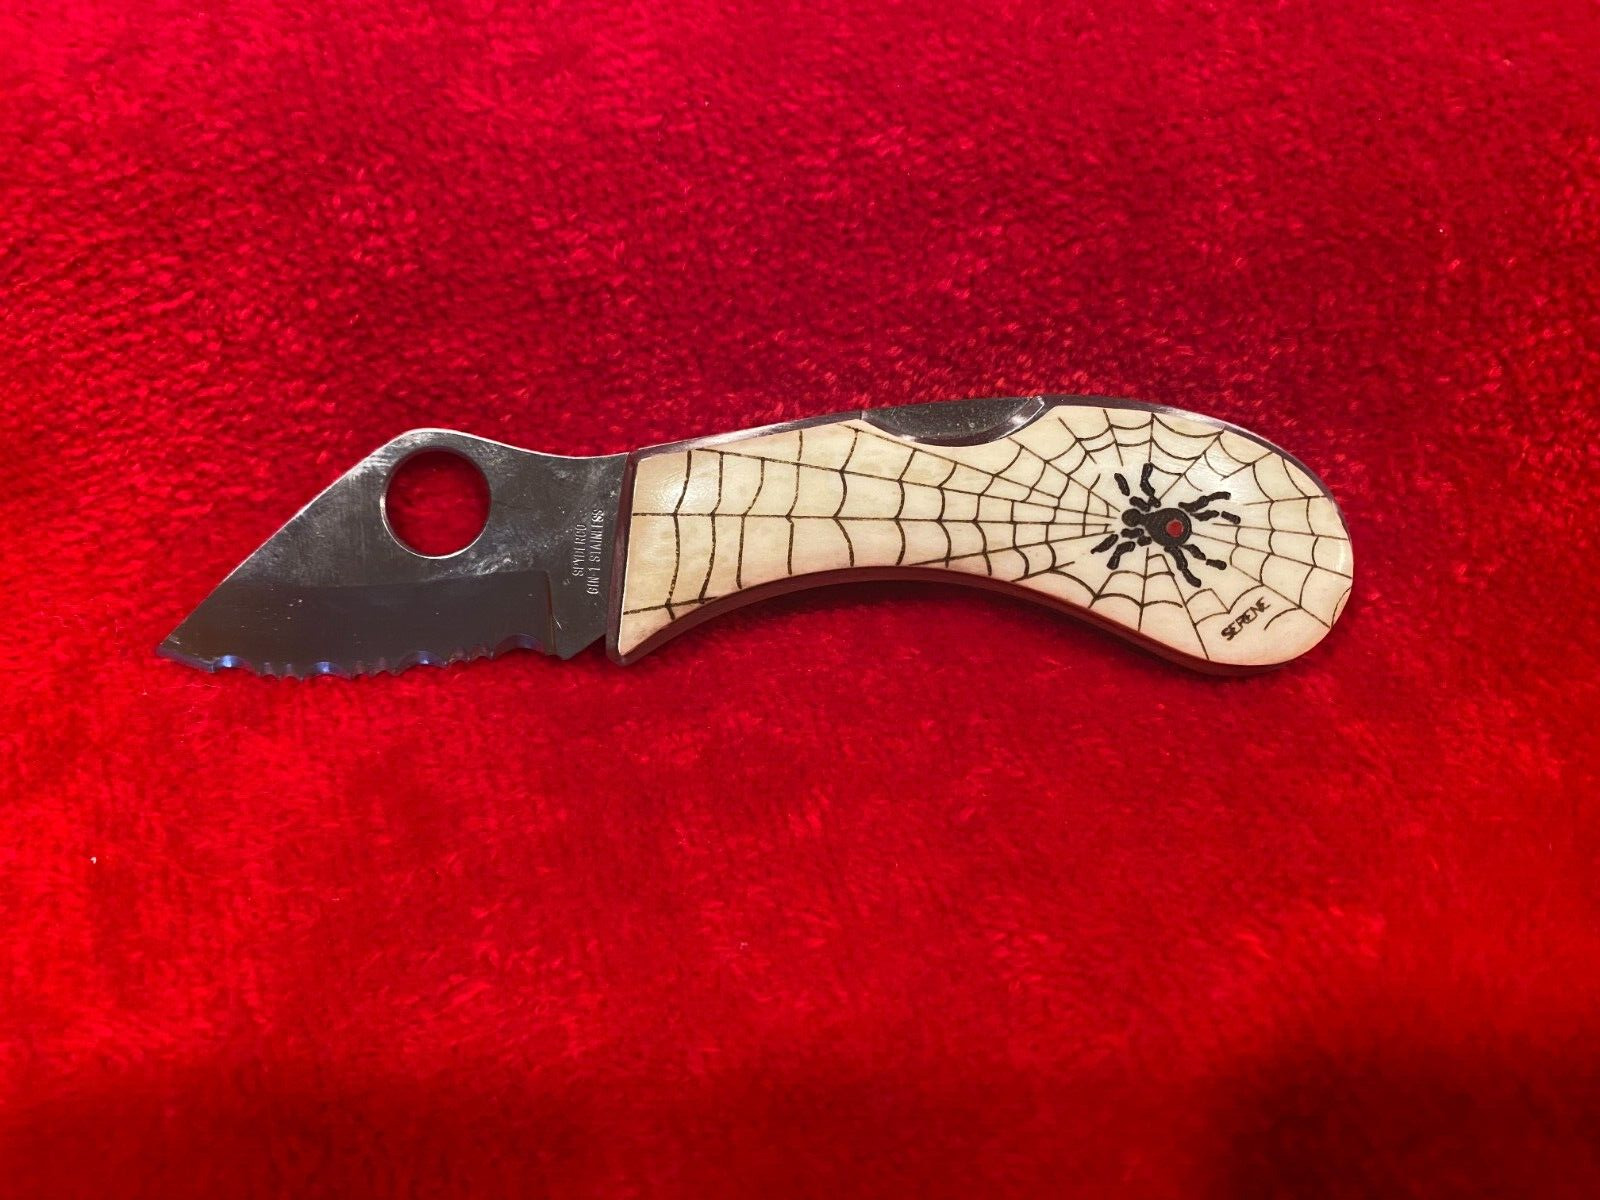 Spyderco Co Pilot Serene Spiderweb GIN-1 Knife Rare 